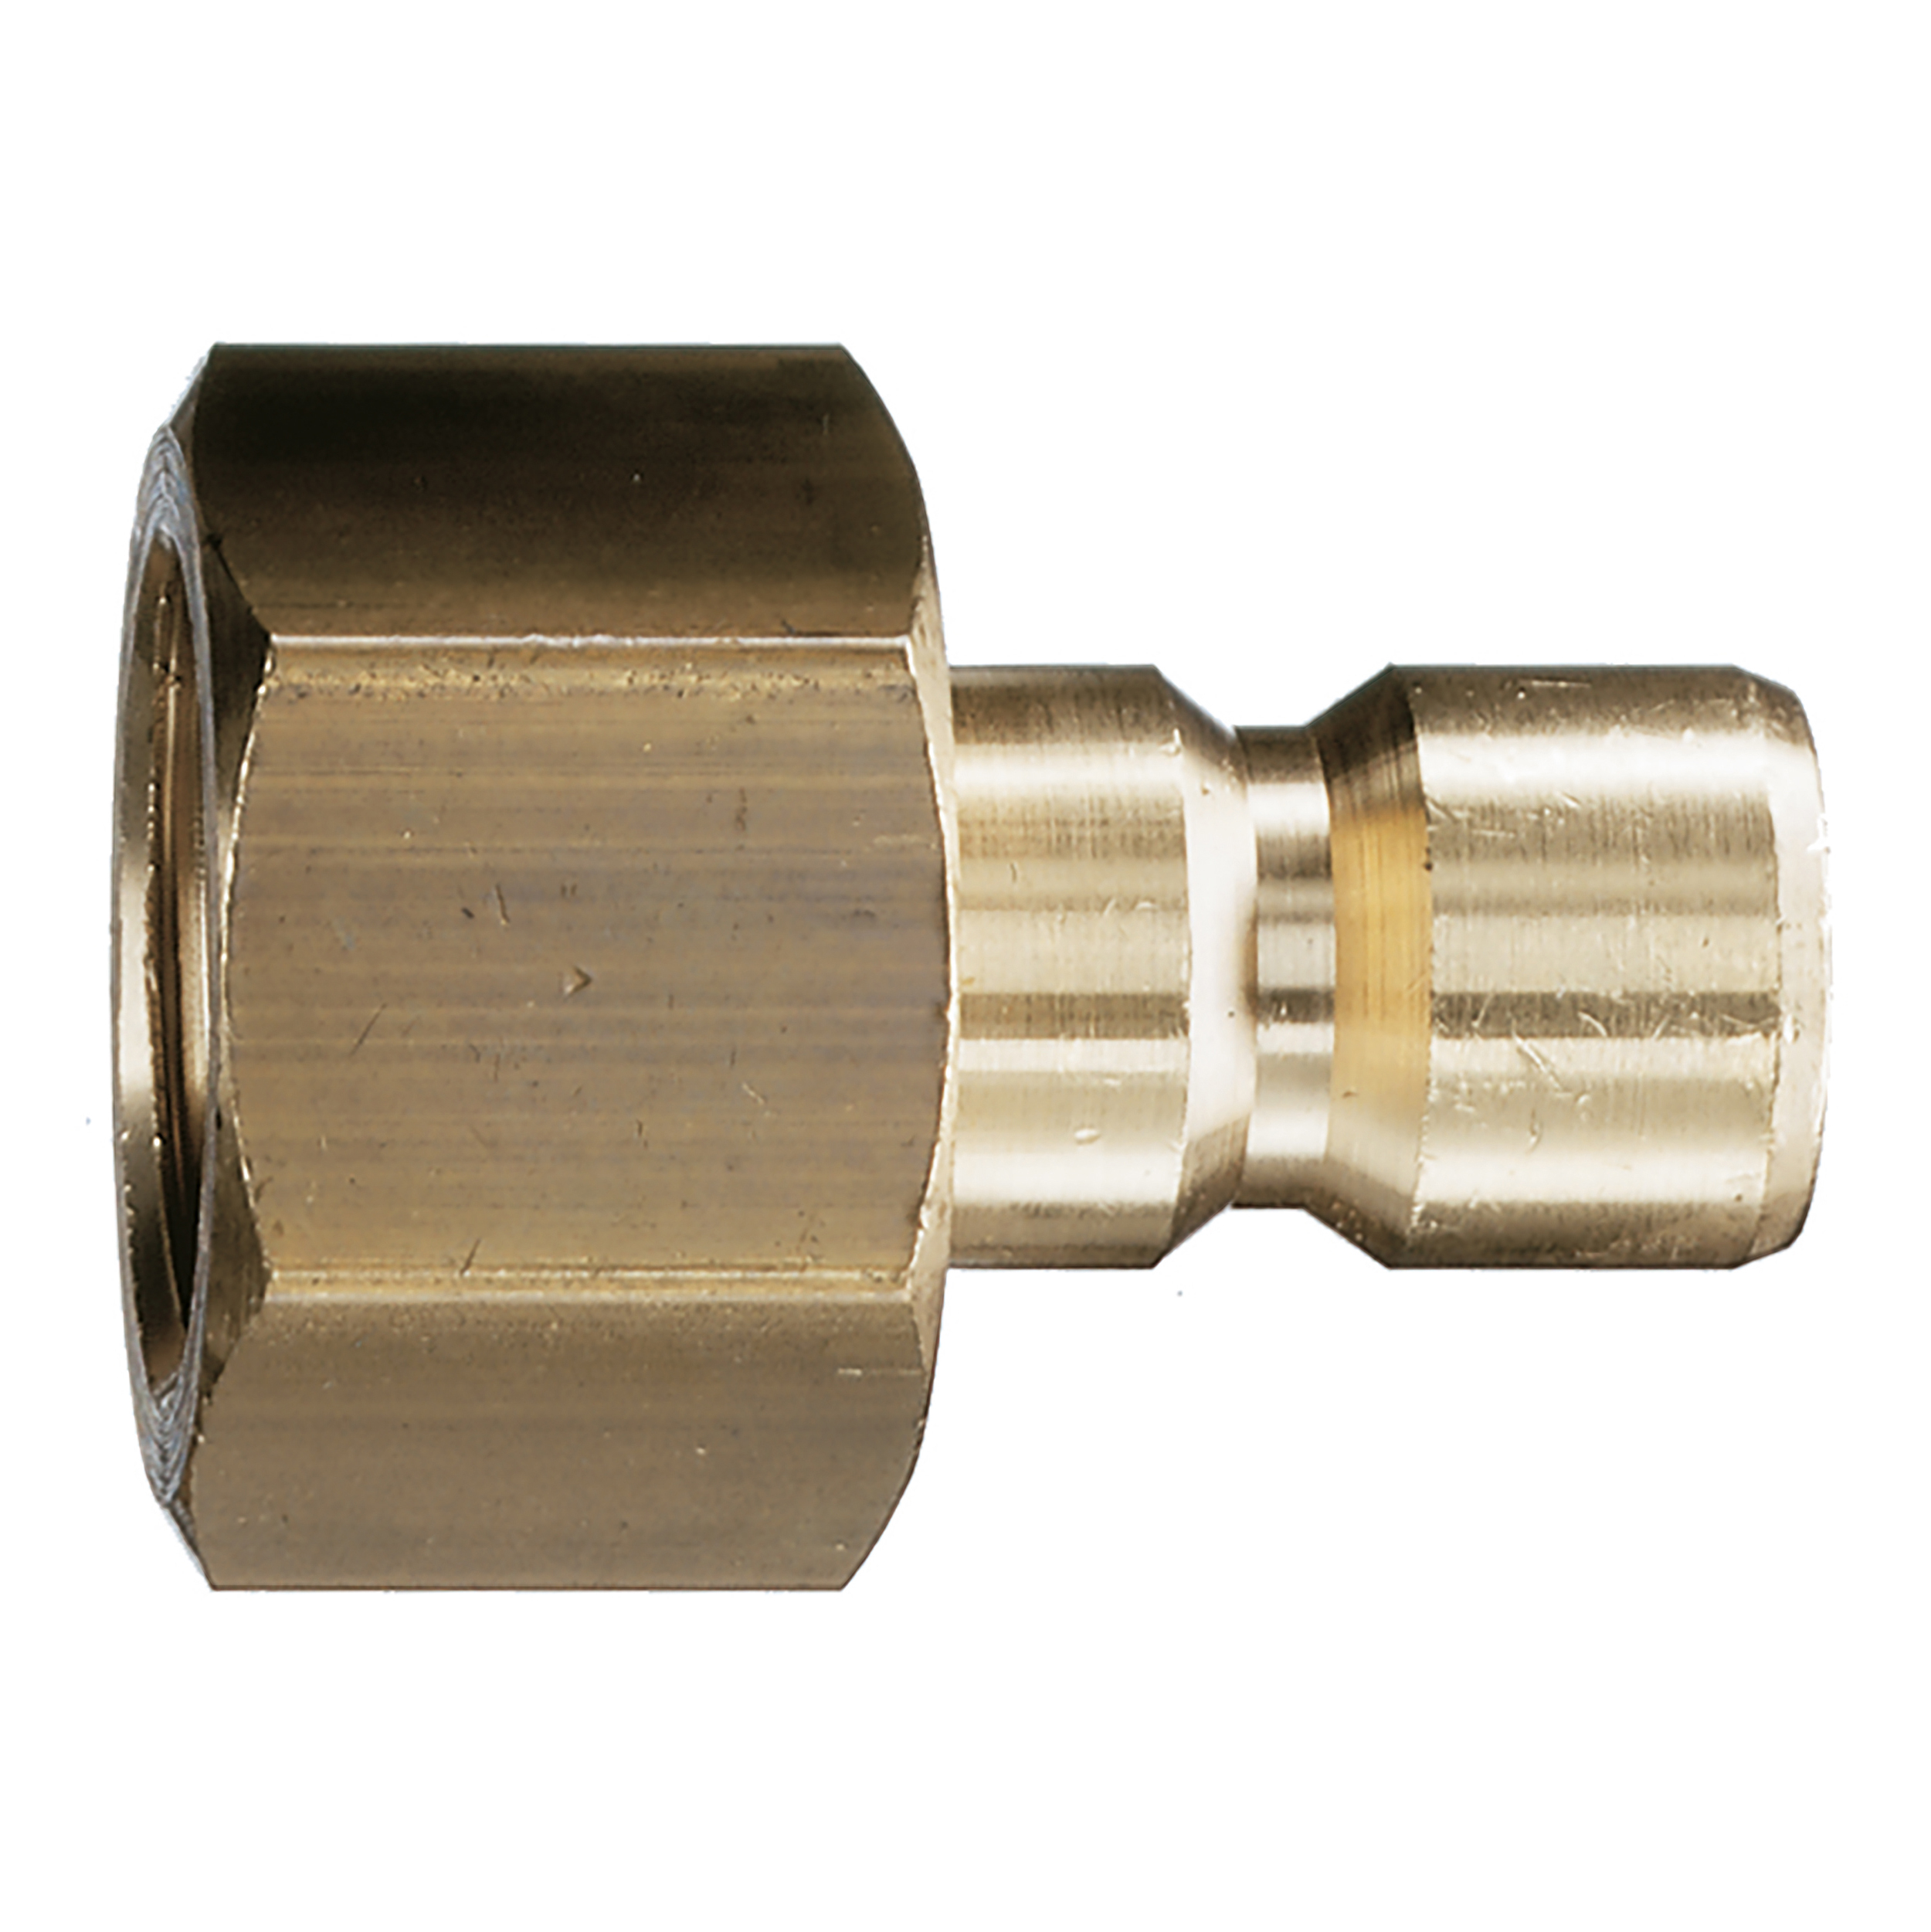 DN 10 plug, QN (87 psi pre-press. / ∆p = 14.5 psi): 3,200 Nl/min, MOP 232 psi, connection: G½ female, L: 42 mm, AF 27